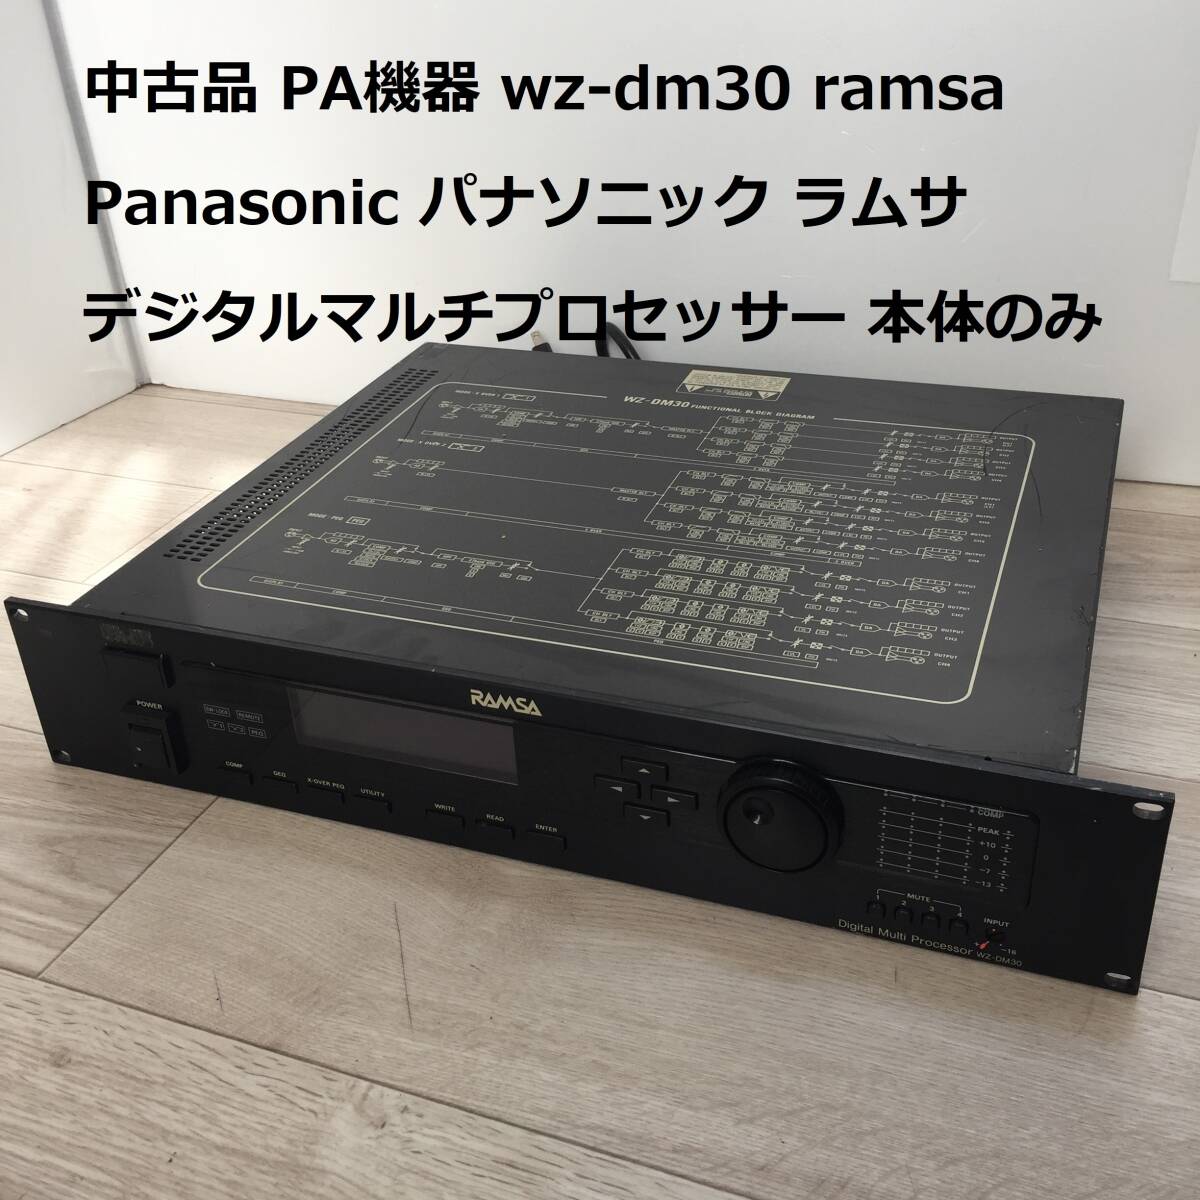 中古品 PA機器 wz-dm30 ramsa Panasonic パナソニック ラムサ デジタルマルチプロセッサー 音響 楽器 器材 本体のみ